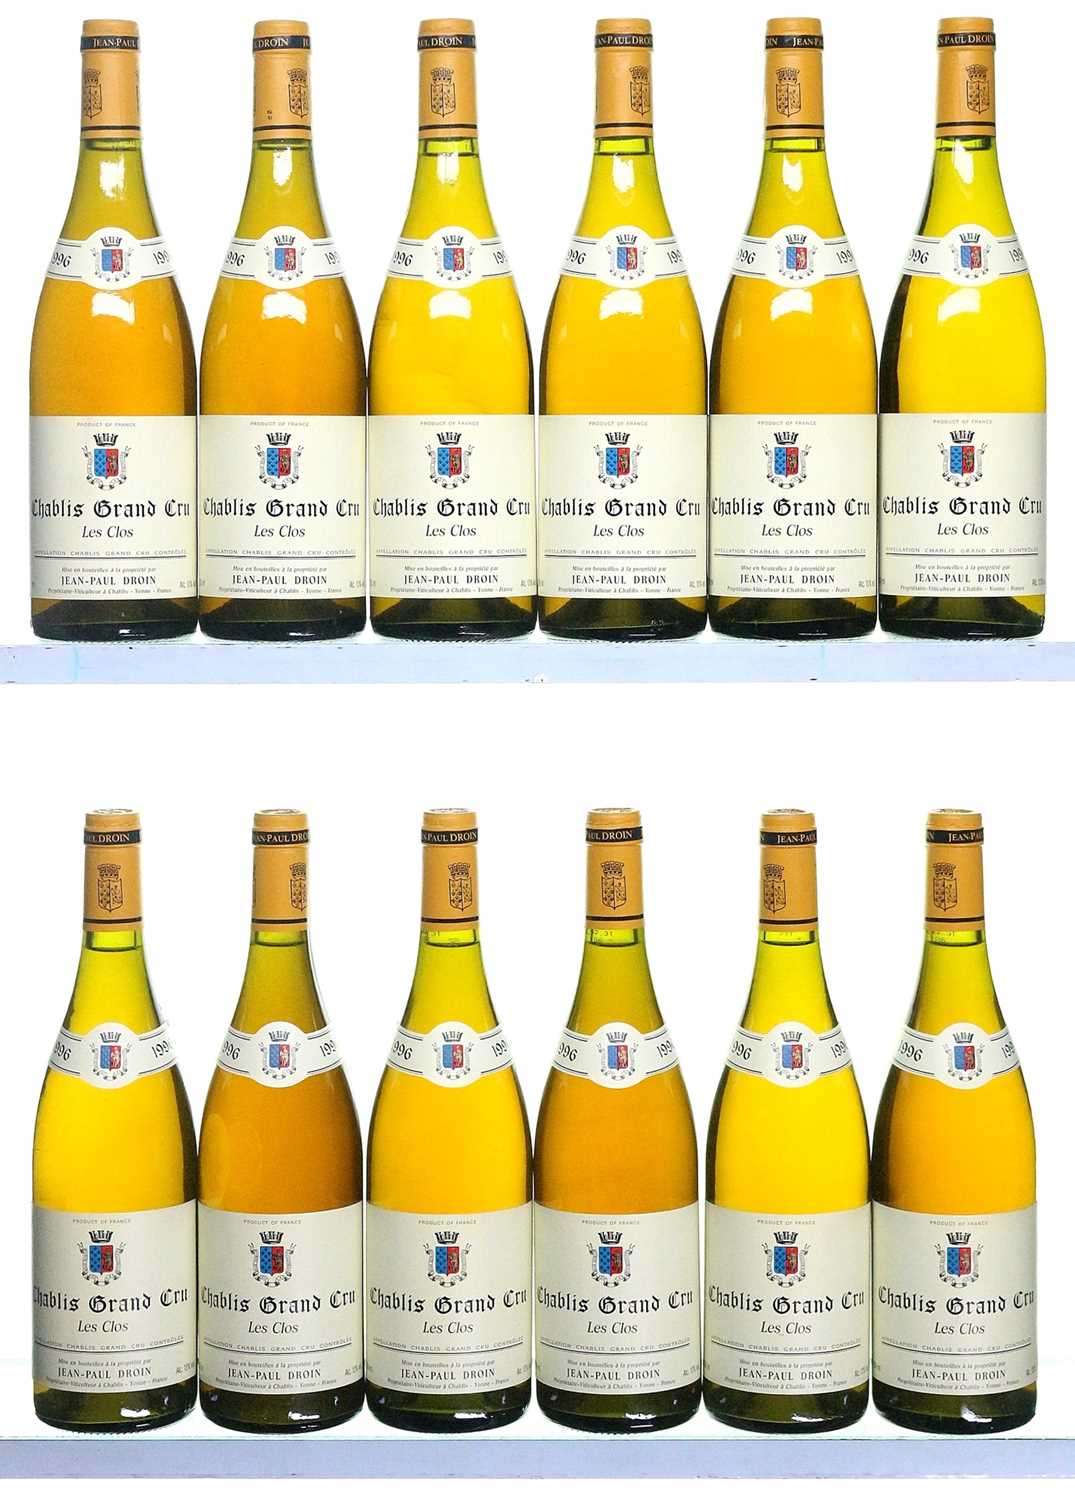 Lot 137 - 12 bottles 1996 Chablis Les Clos Droin